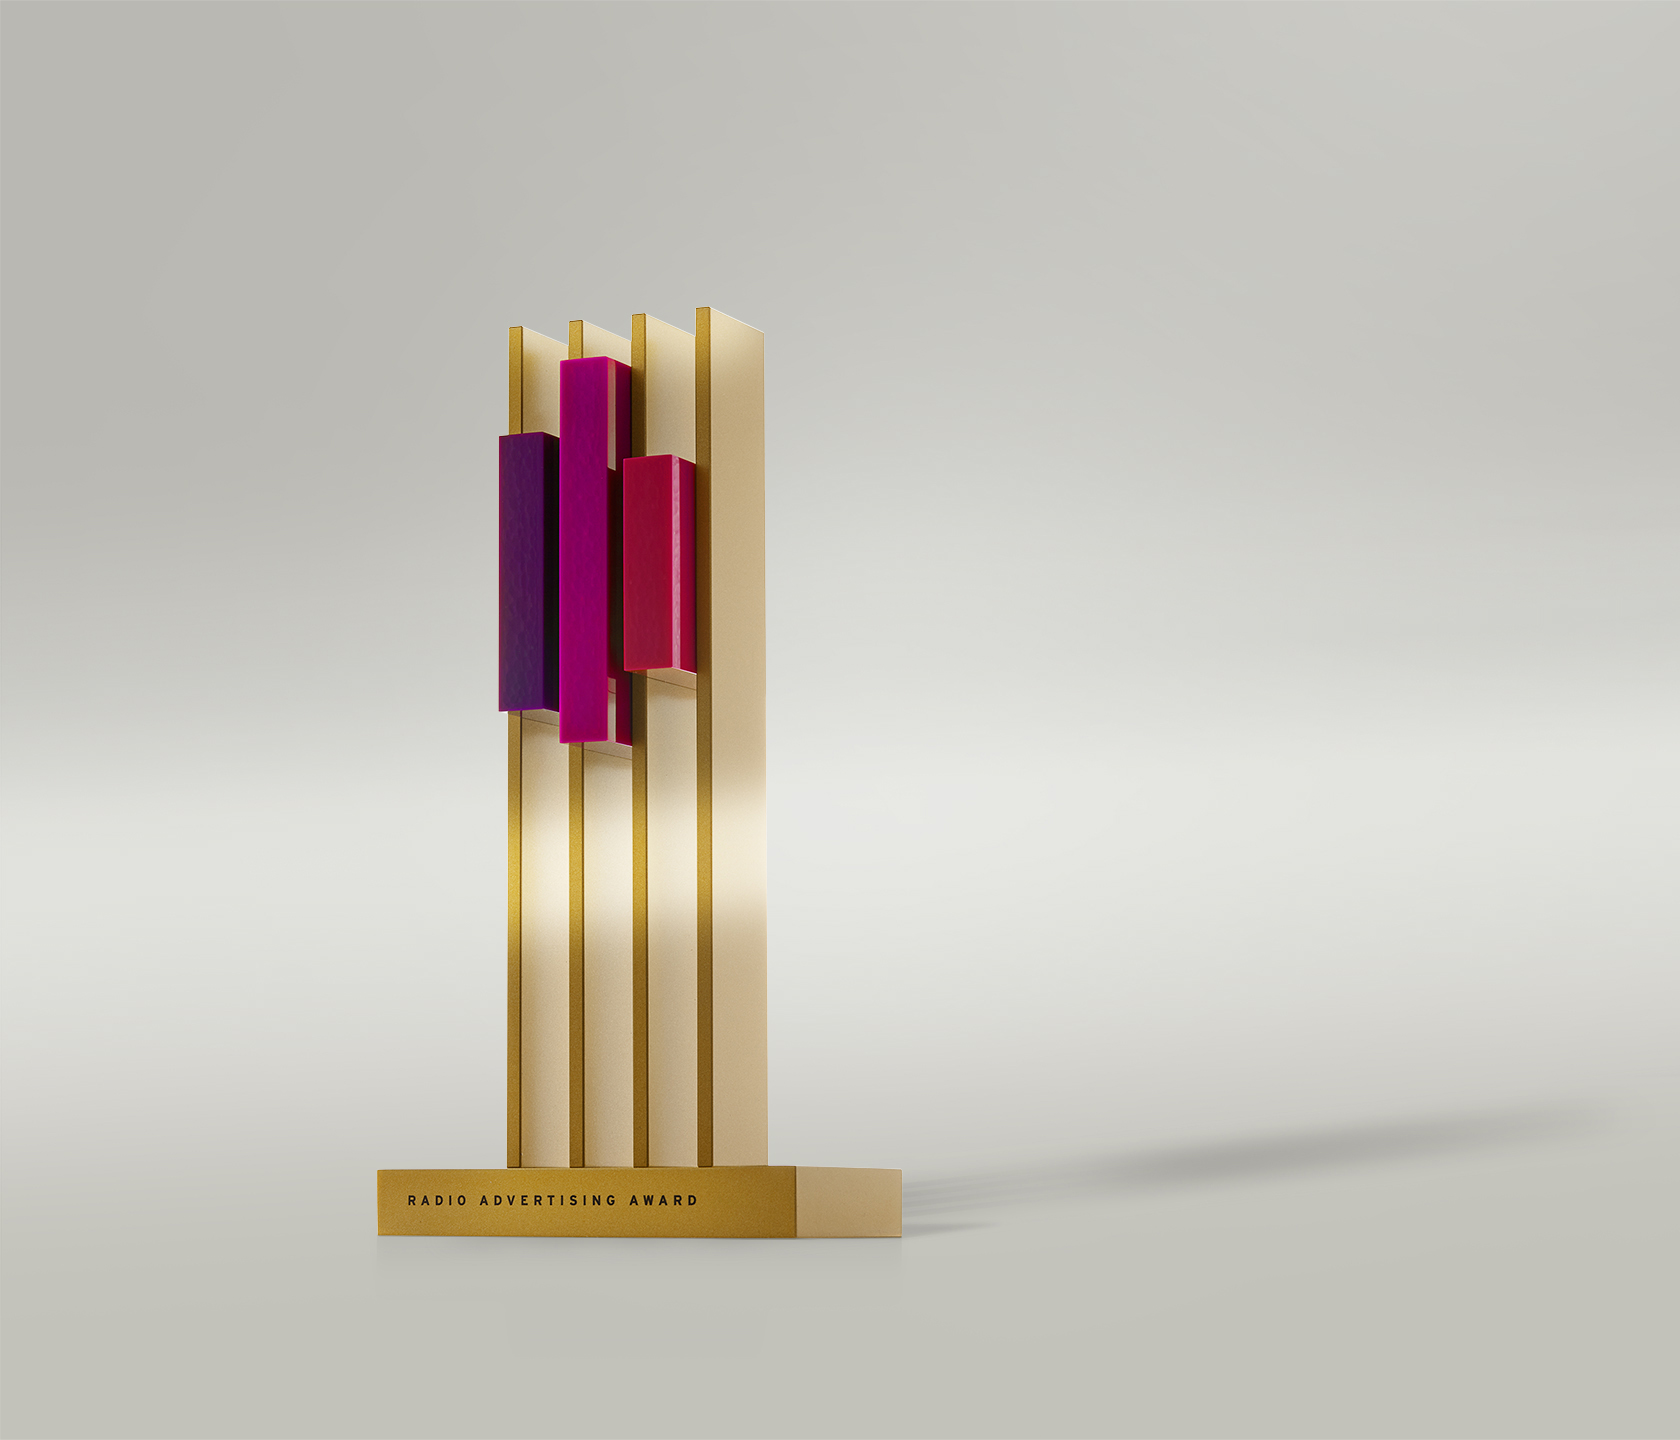 Viermal Gold lautet das Urteil der Jury beim Radio Advertising Award 2021. - Foto: Radiozentrale